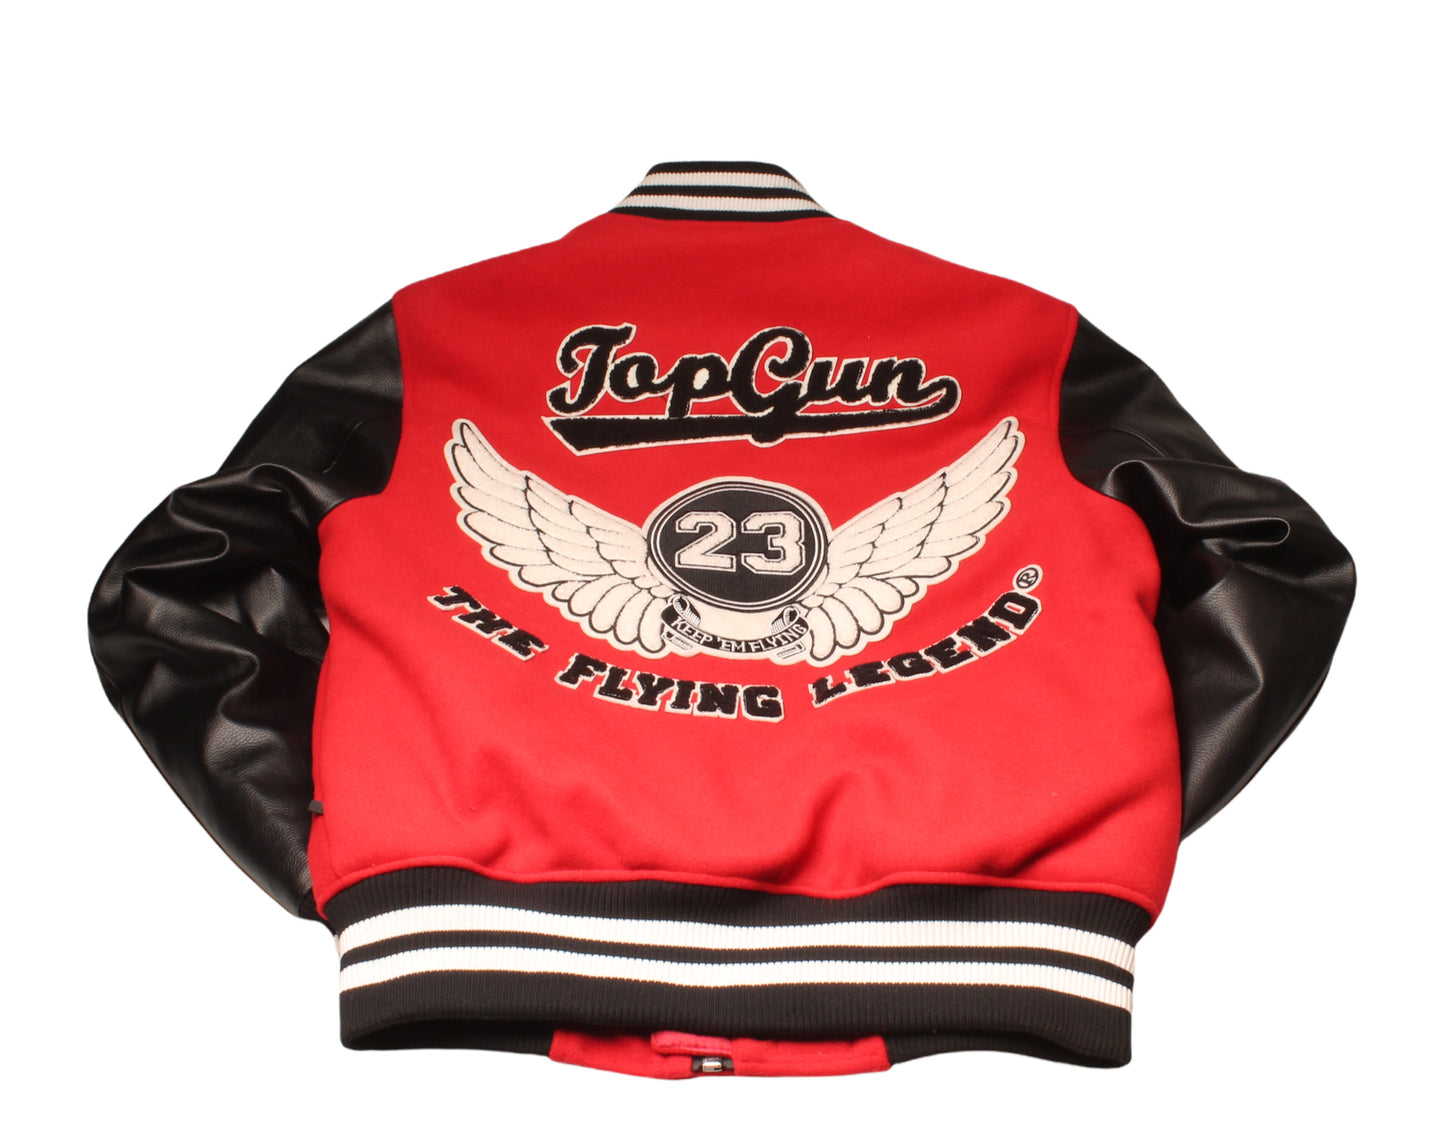 Top Gun Flying Legends Men's Varsity Jacket